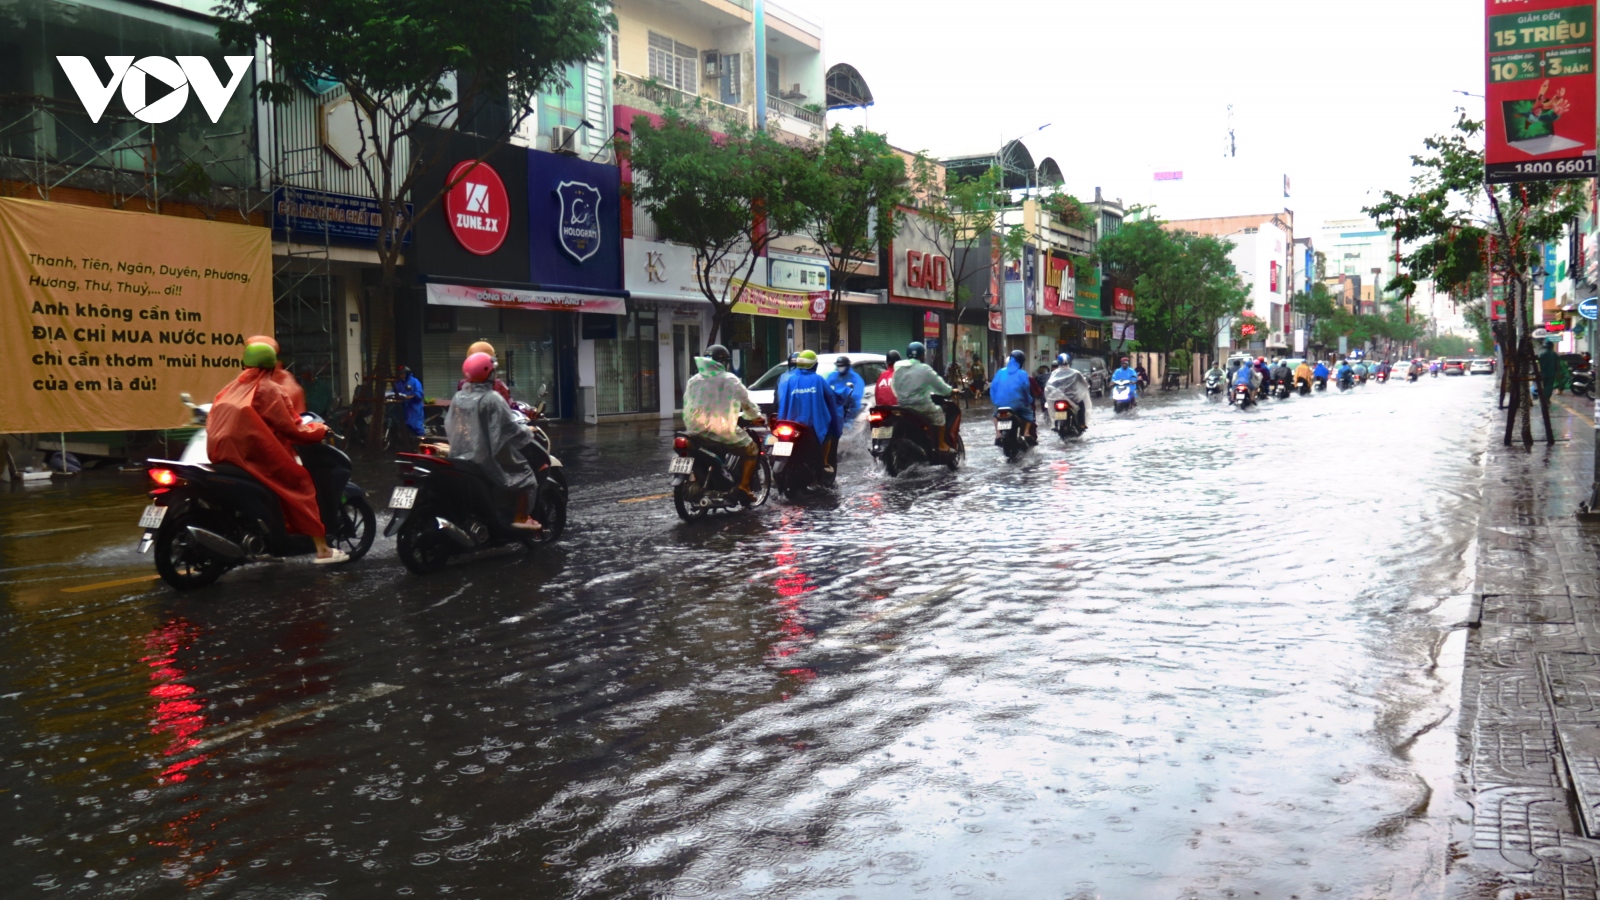 Mưa ngập trong giờ cao điểm ở Đà Nẵng, nhiều người trễ giờ làm việc